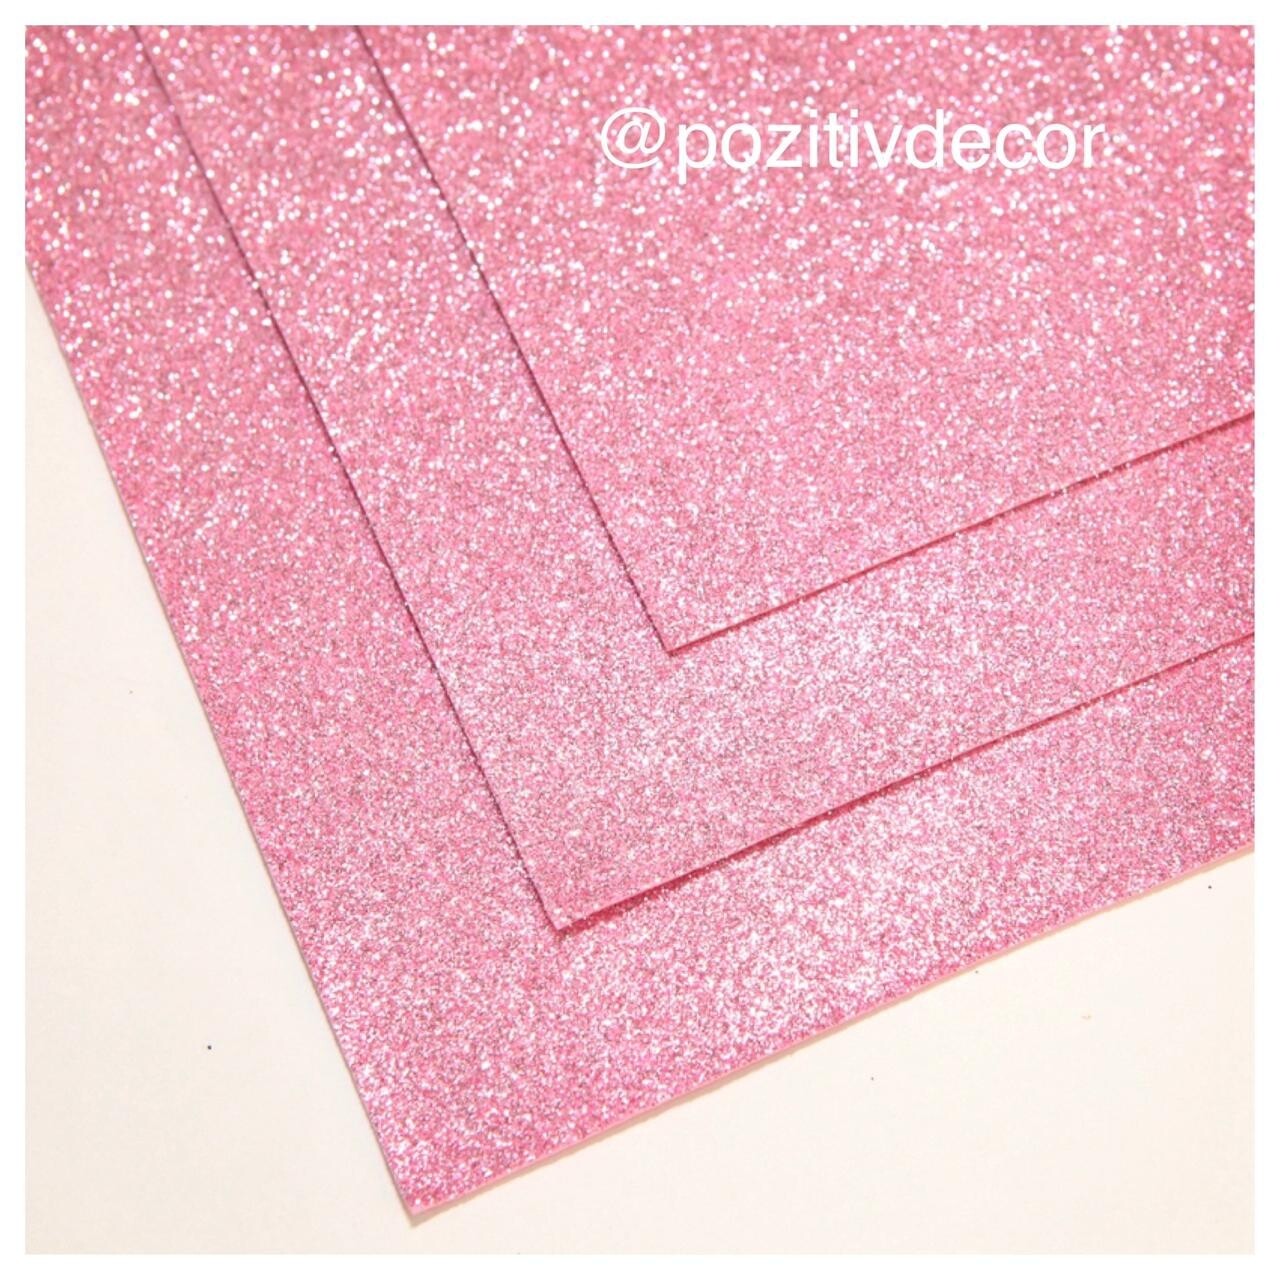 Фоамиран глиттерный - толщина 1,5 мм , размер листа 60/70 см.
Цвет - светло-розовый